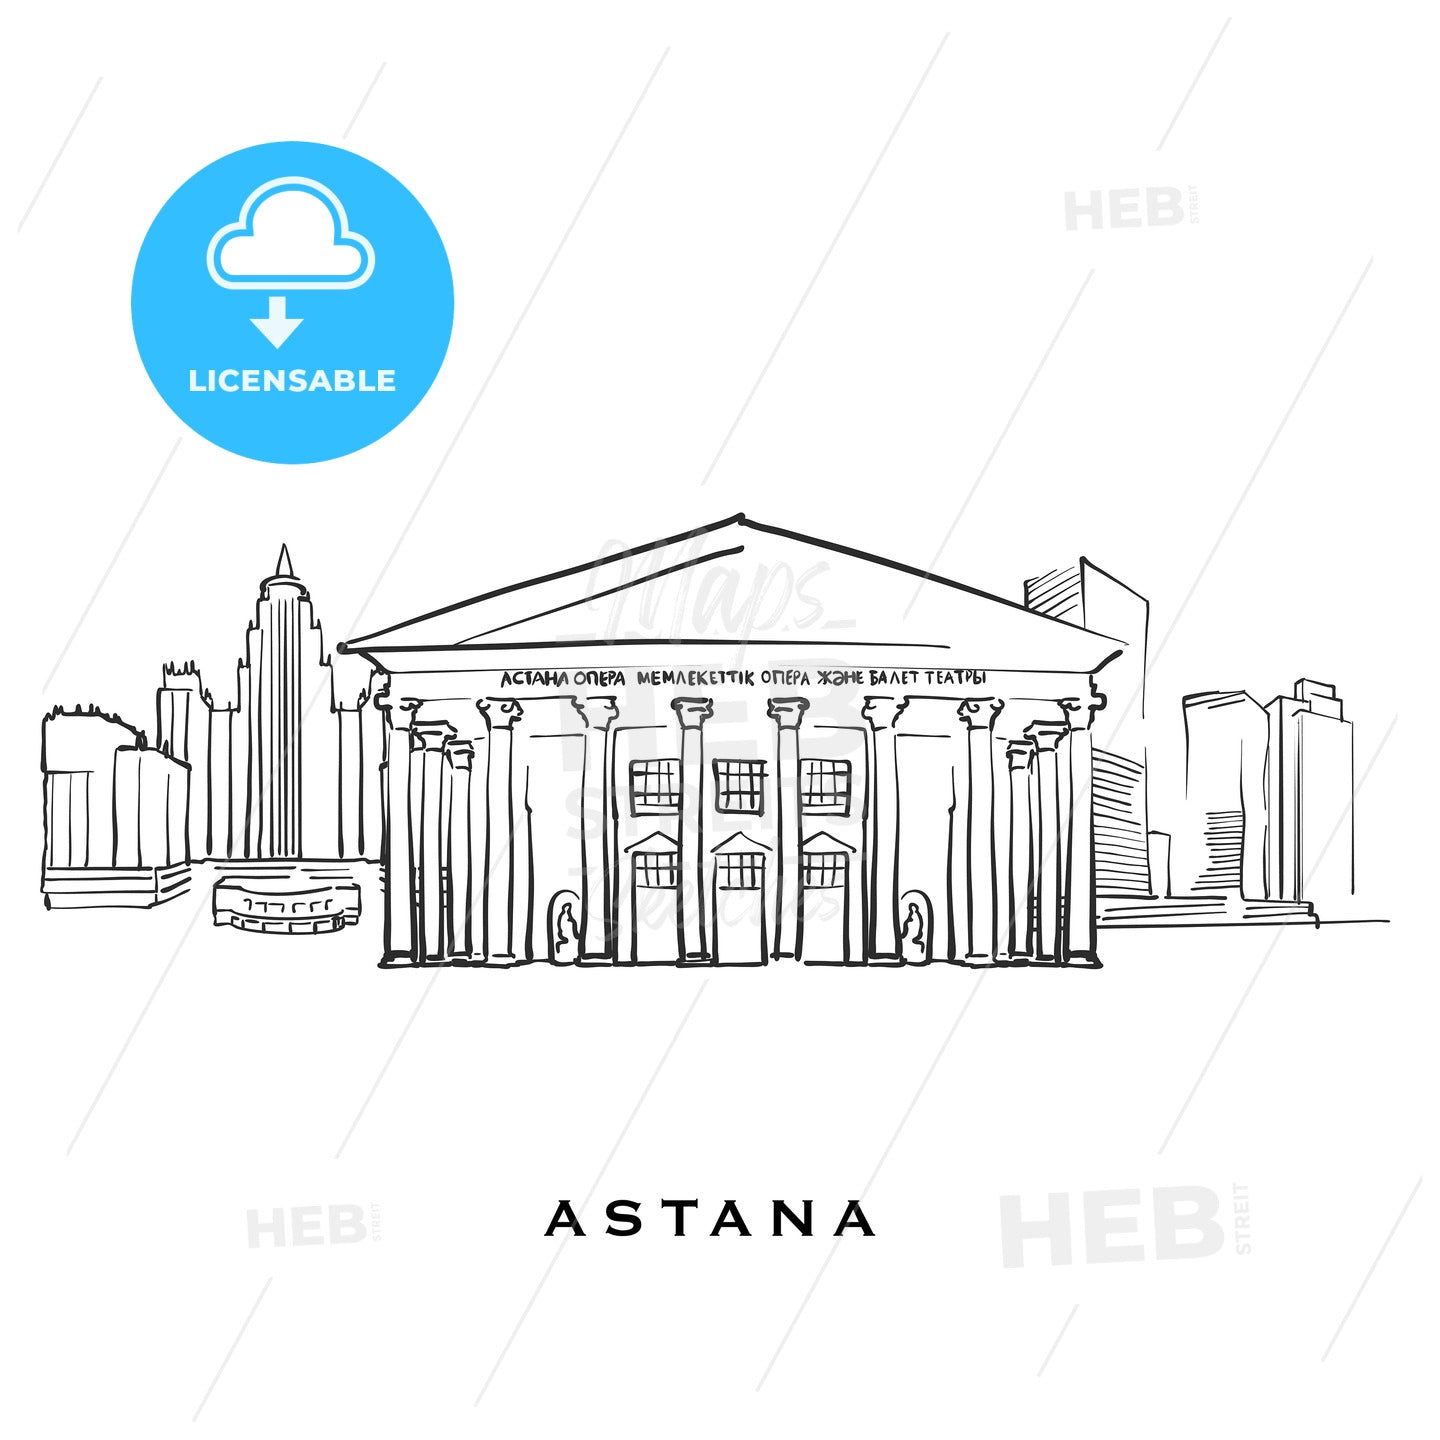 Astana Kazakhstan famous architecture – instant download